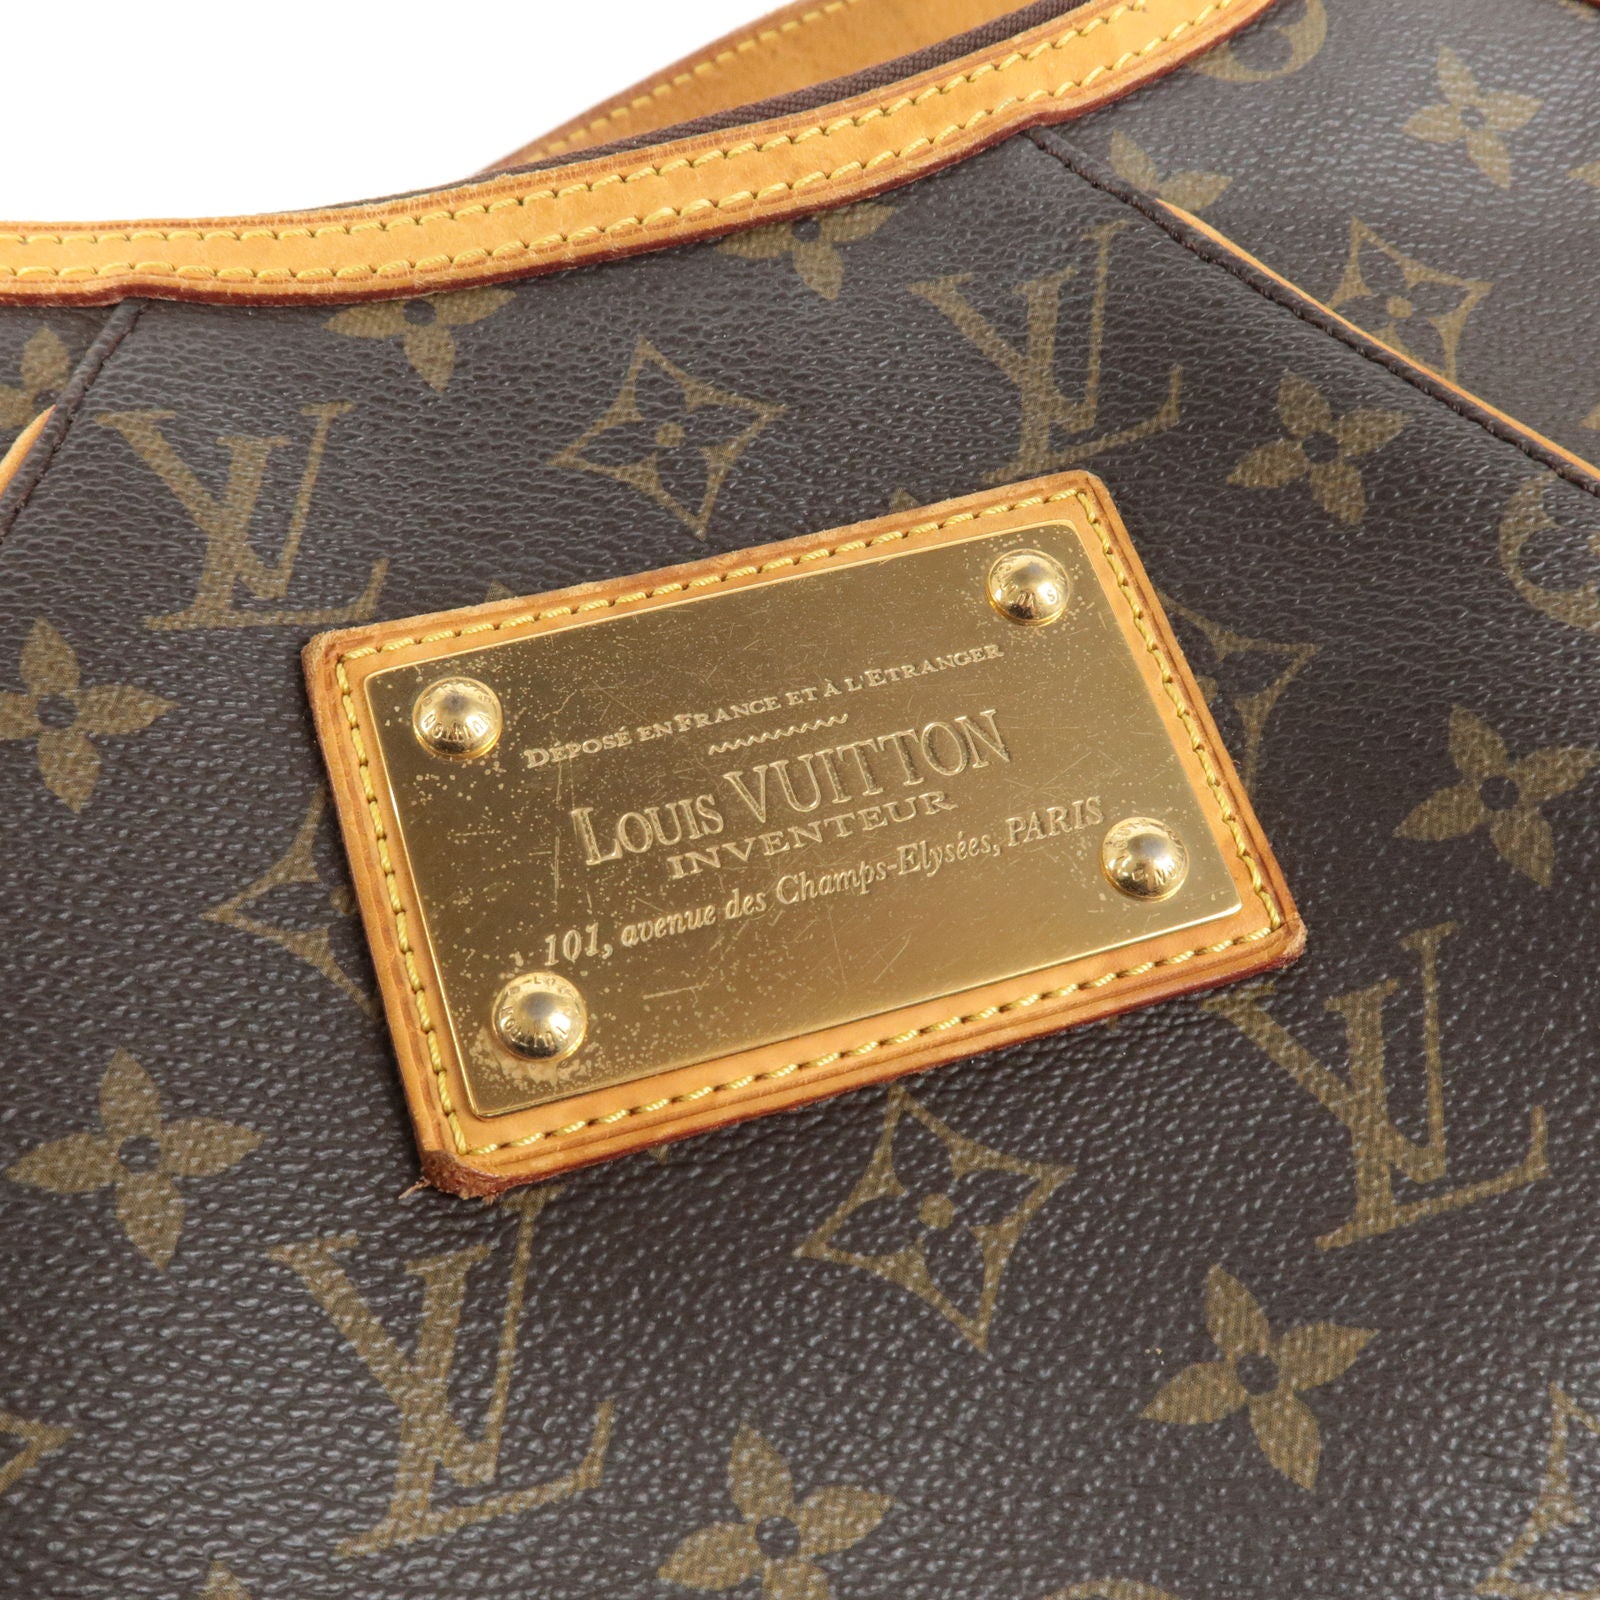 Bag - Shoulder - Thames - Vuitton - Monogram - PM - Louis - M56384